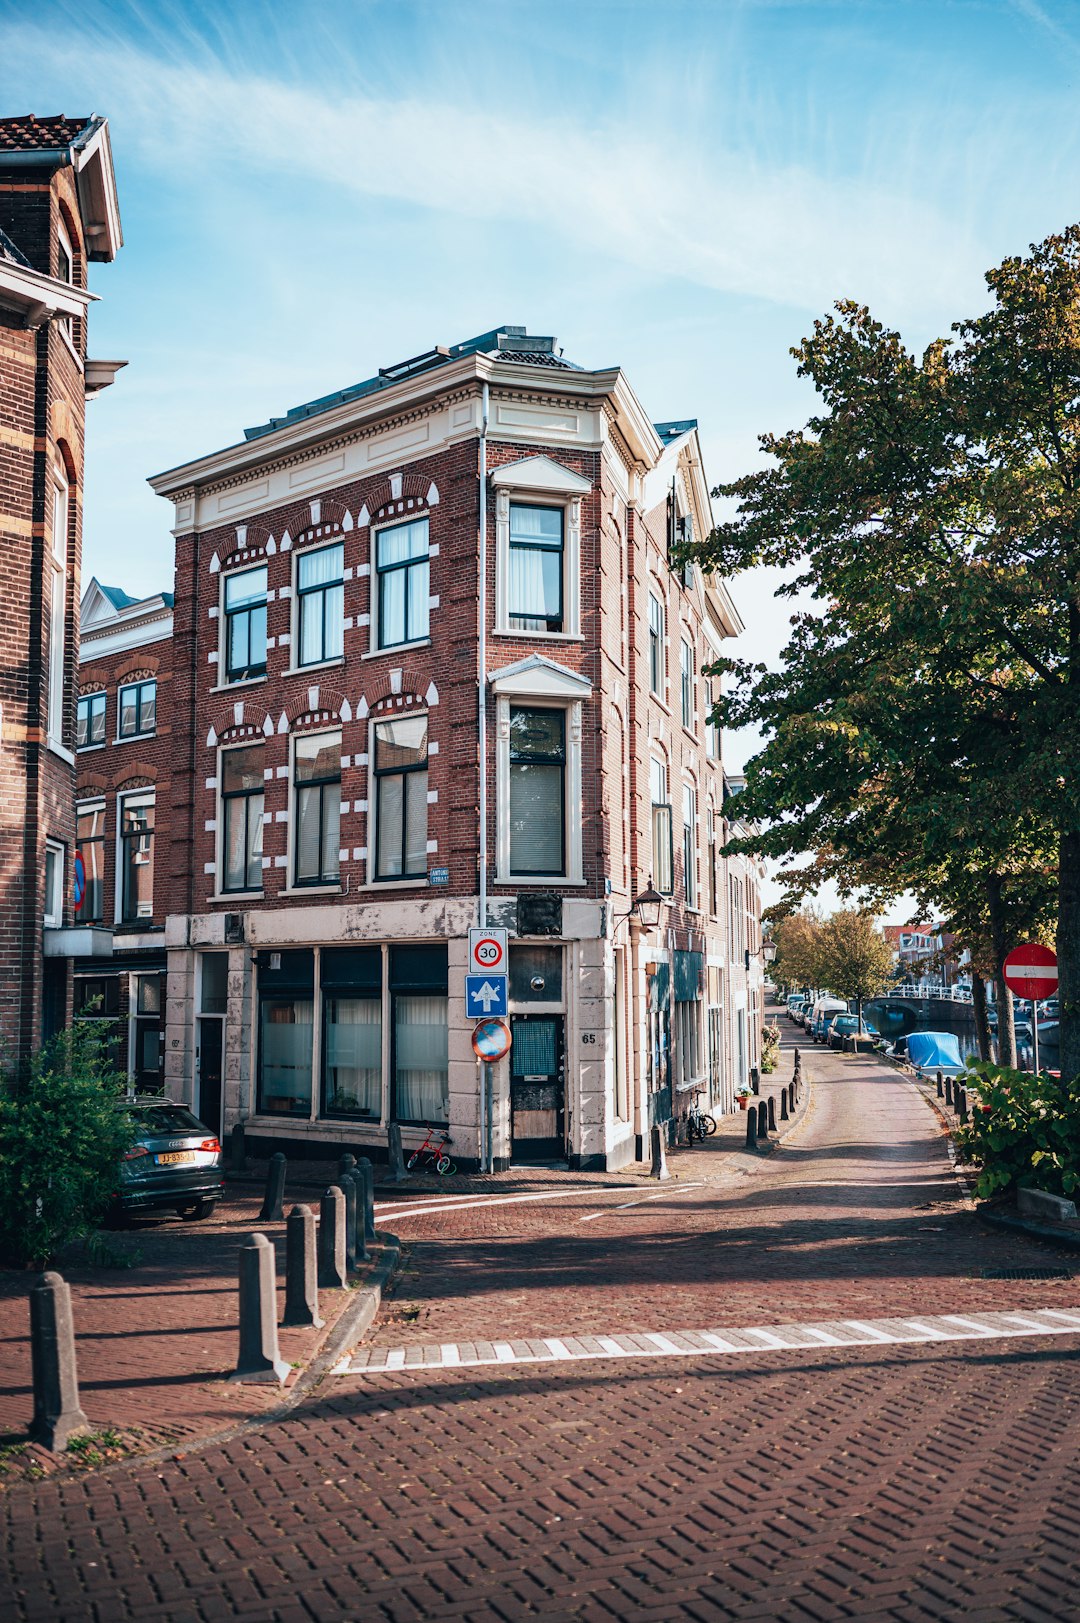 Town photo spot Haarlem The Hague